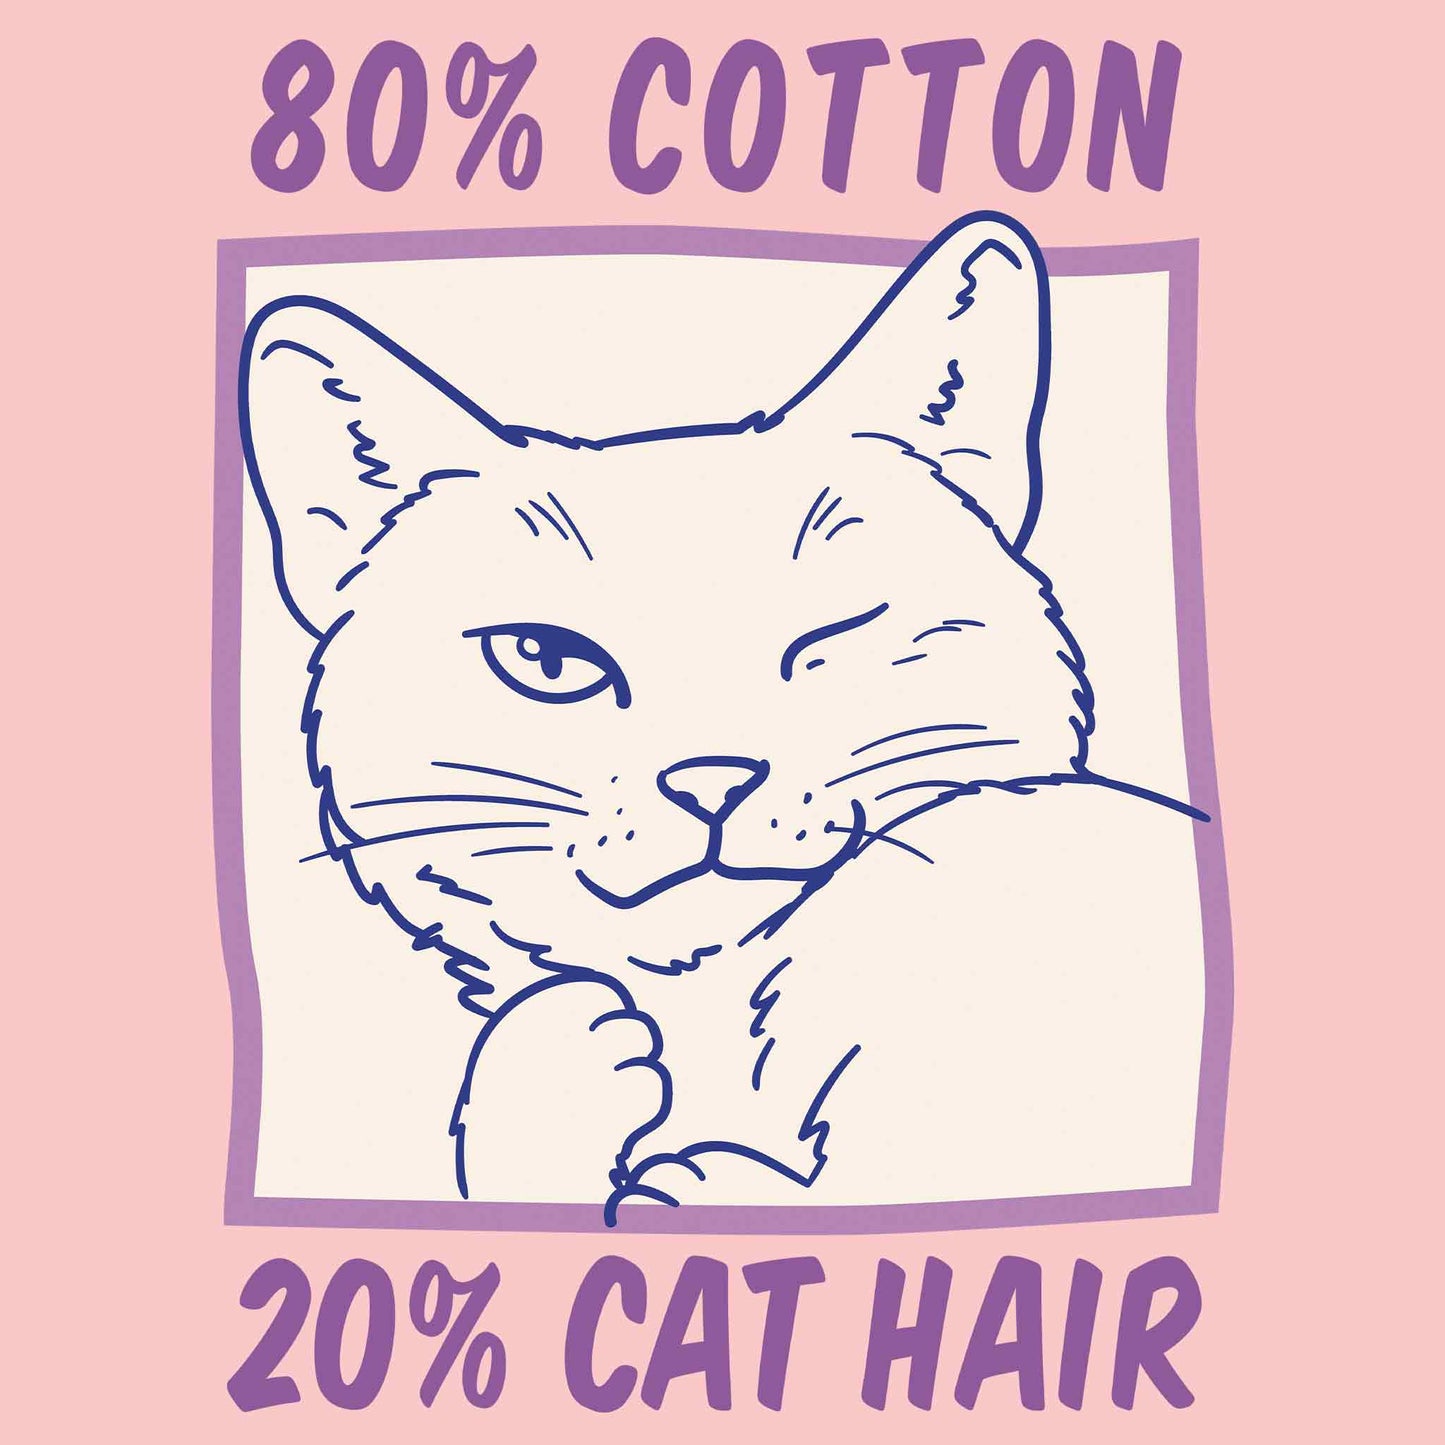 80% Cotton 20% Cat Hair T-Shirt